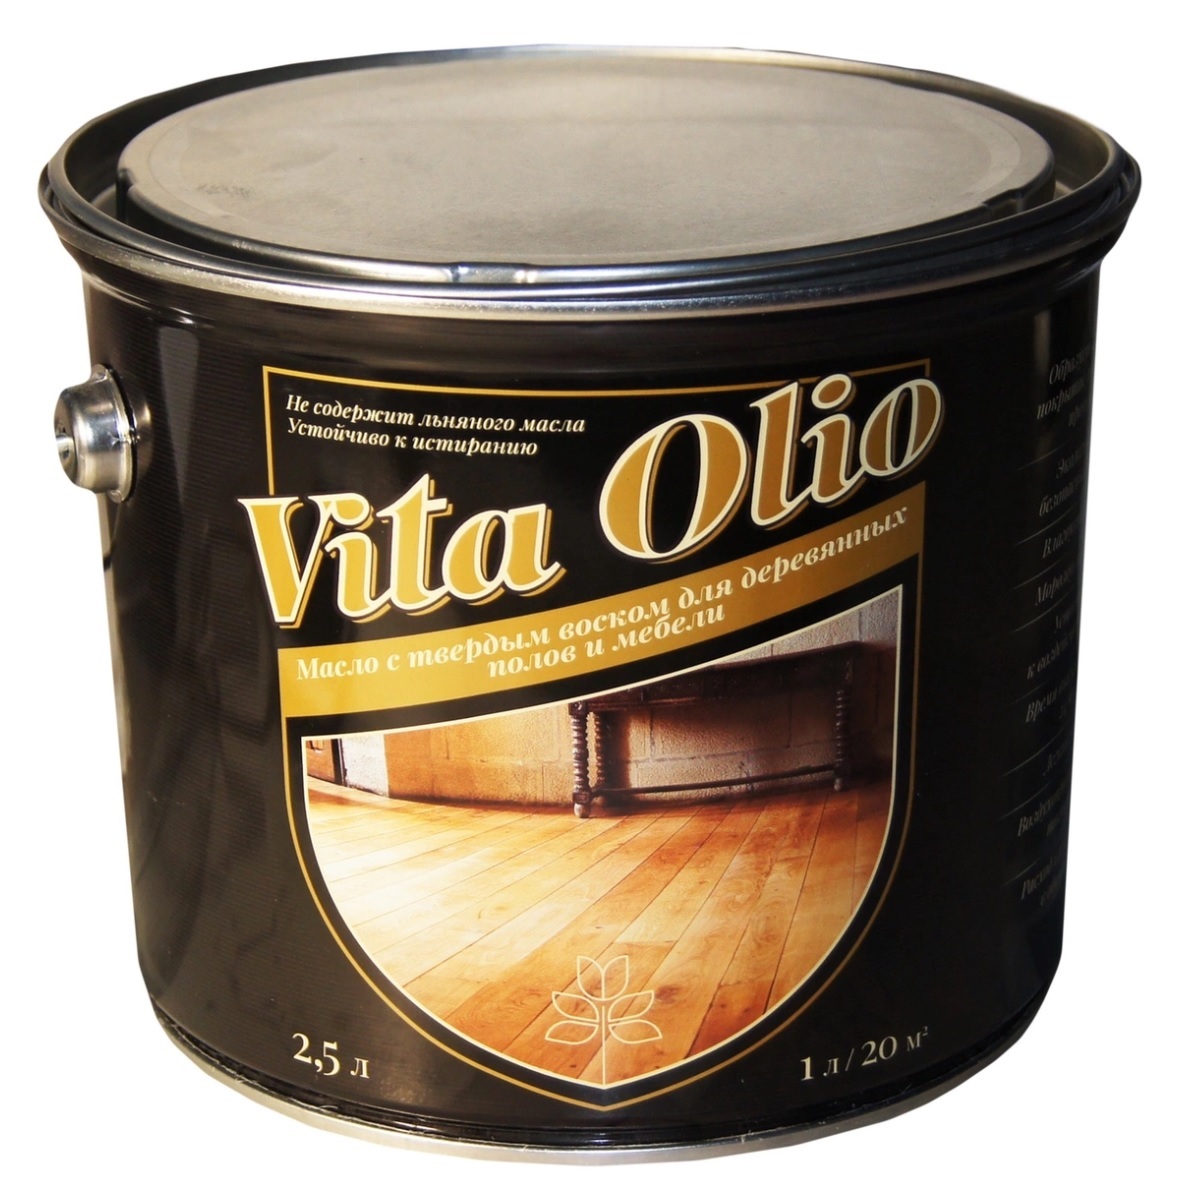 Масло VITA OLIO для паркета, лестниц и мебели шелковисто-матовое цвет эбеновое дерево2,5 л.